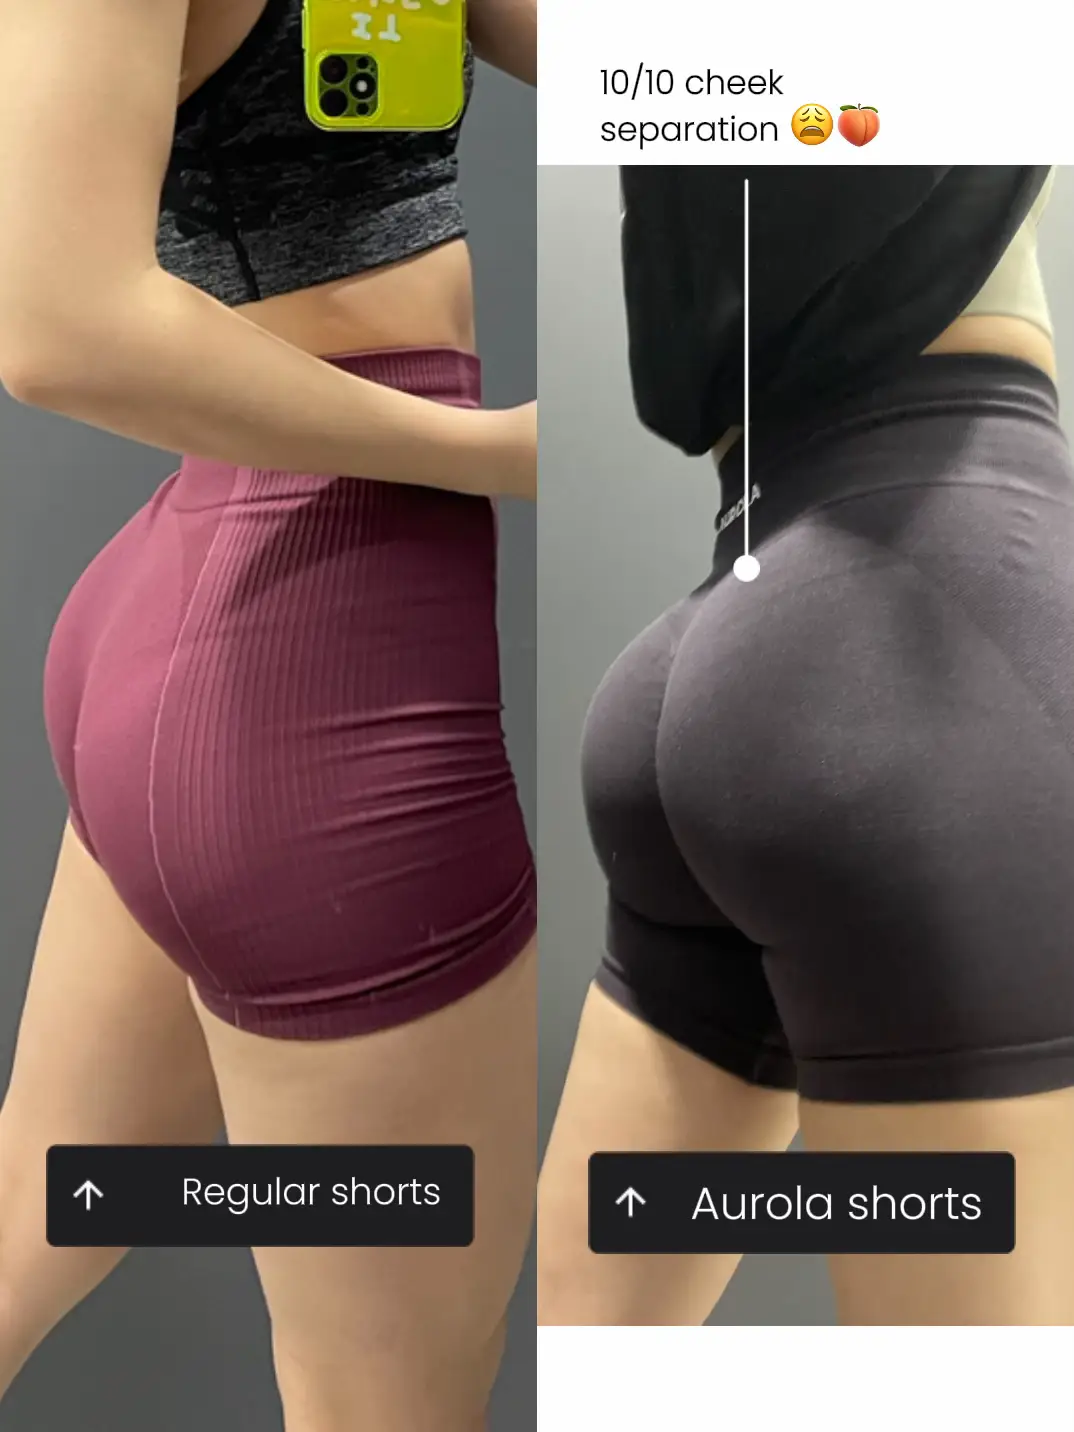 Aurola Shorts